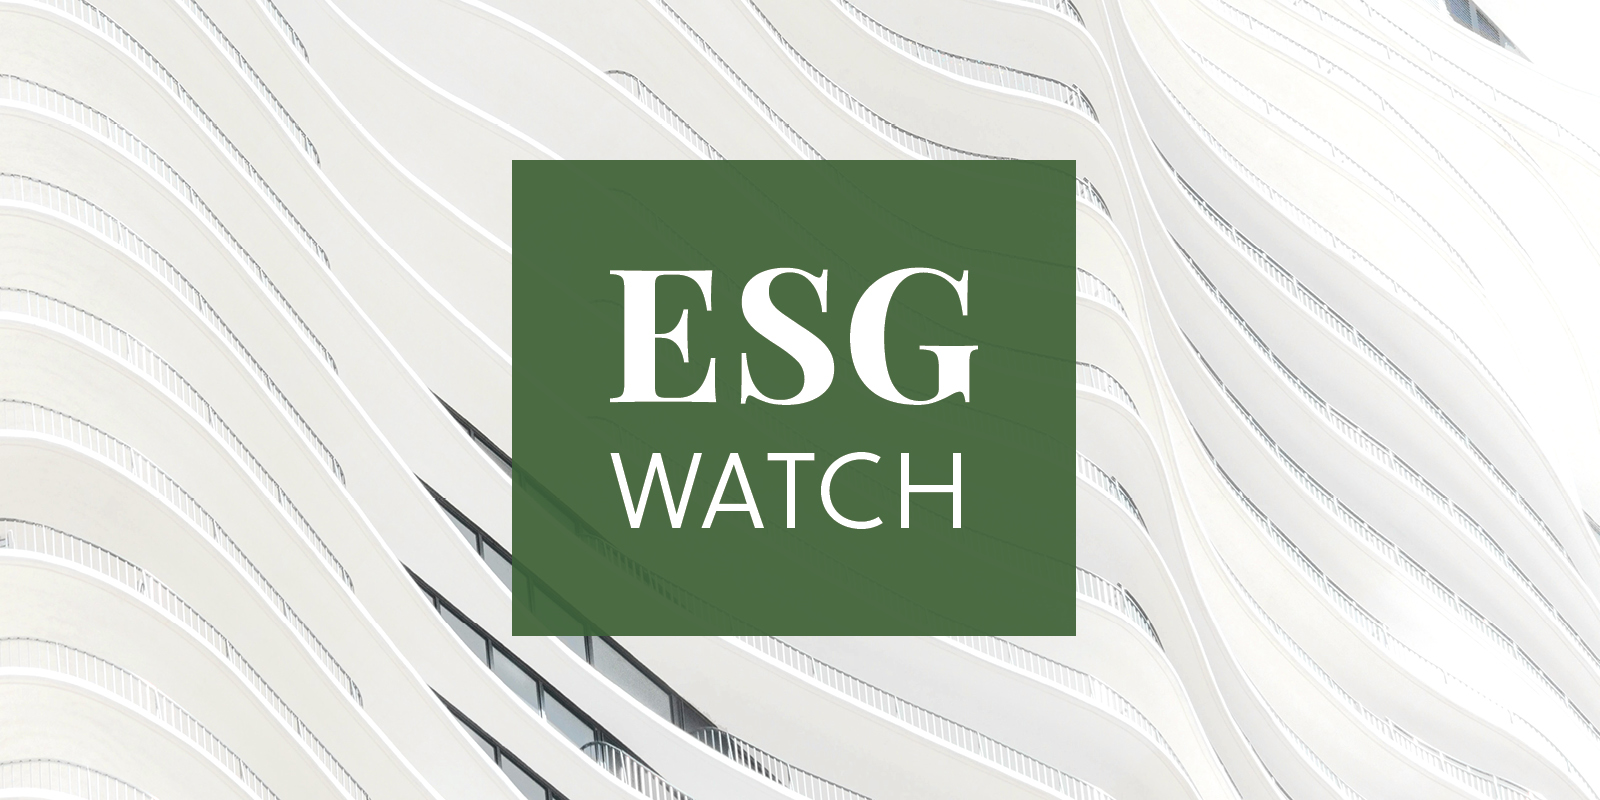 ESG News